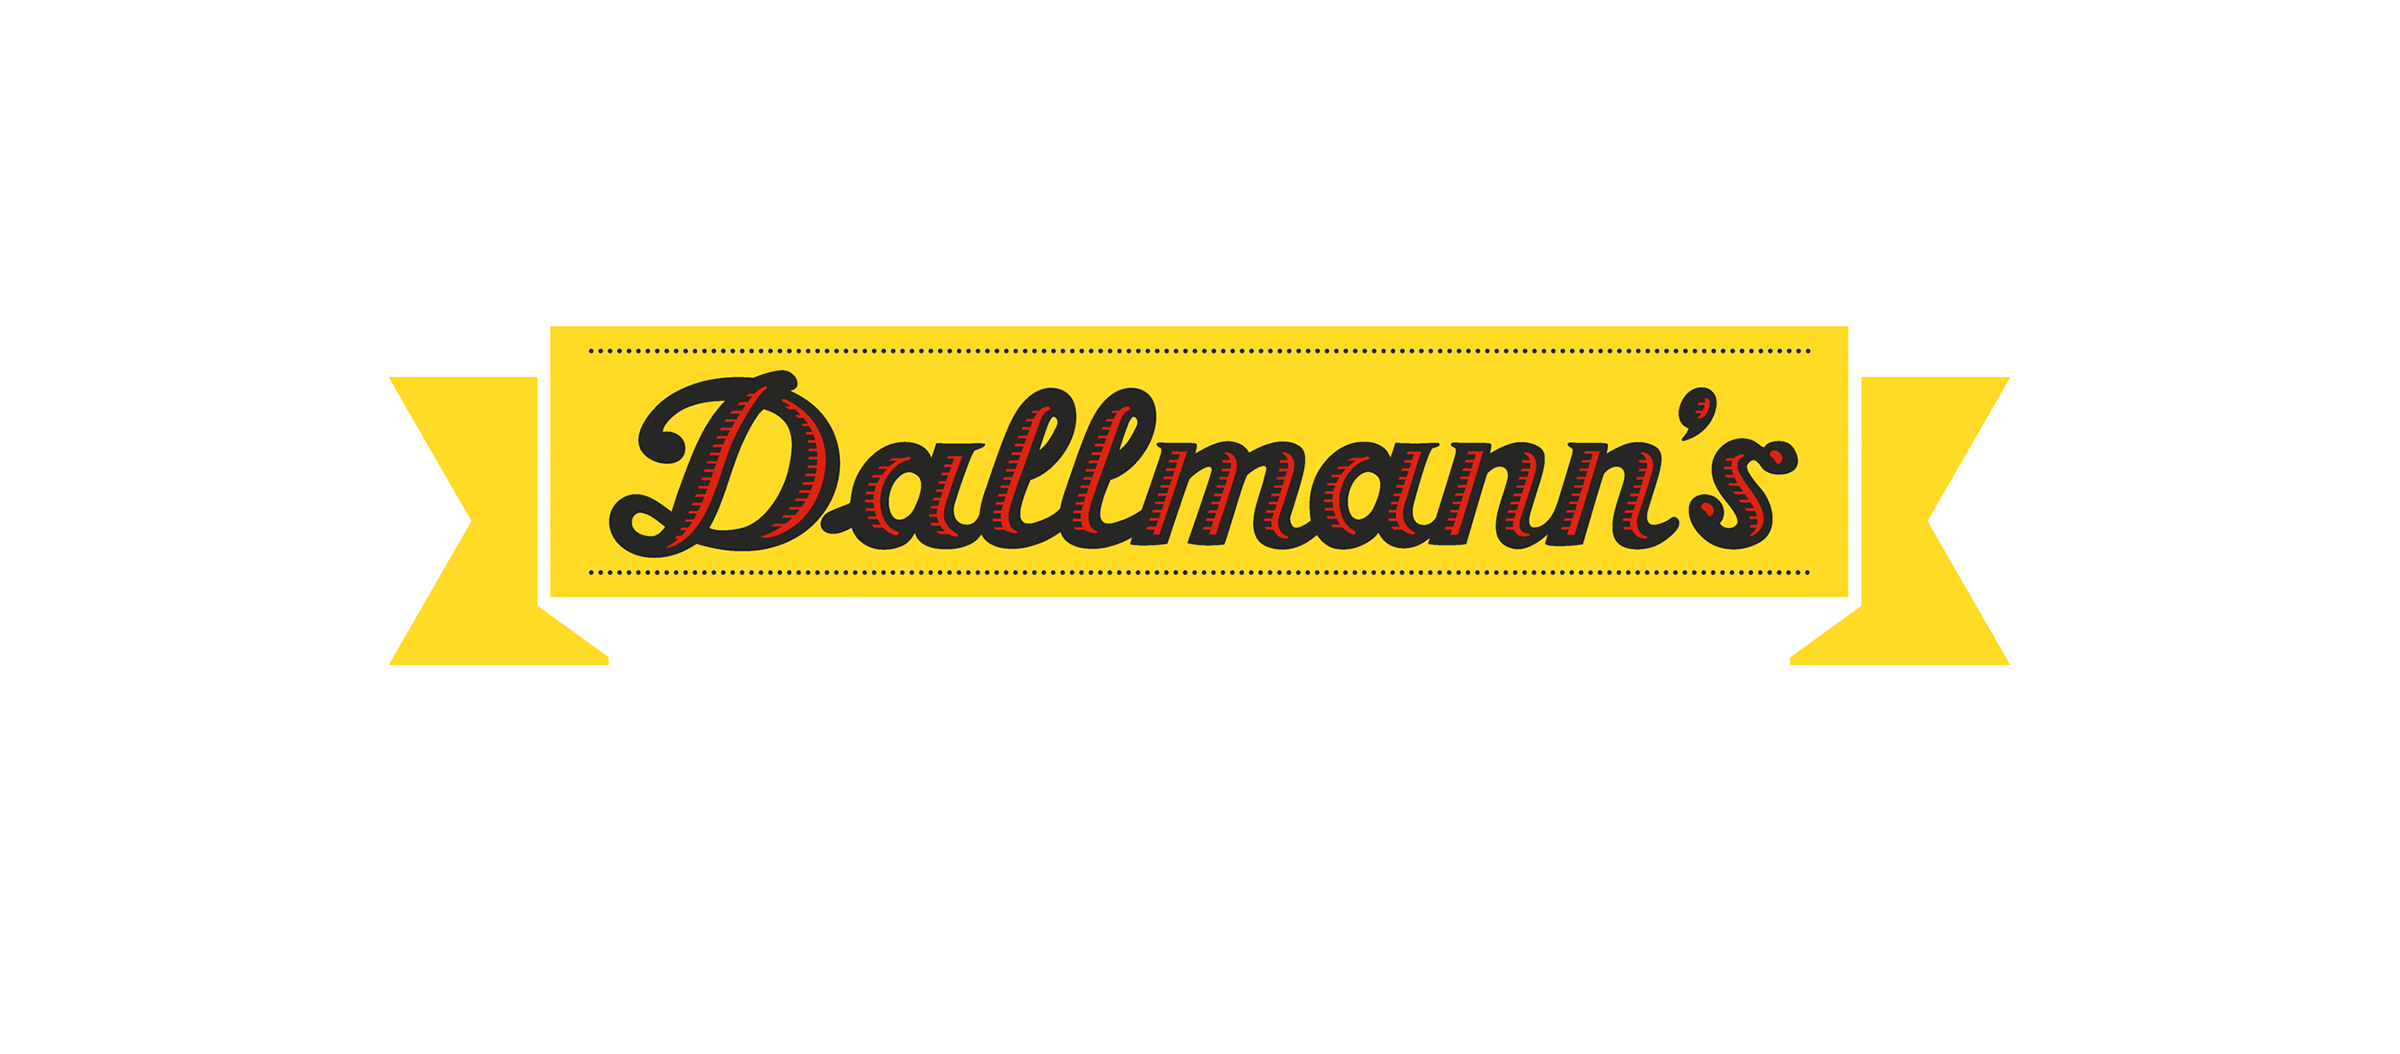 Dallmann's Pharma